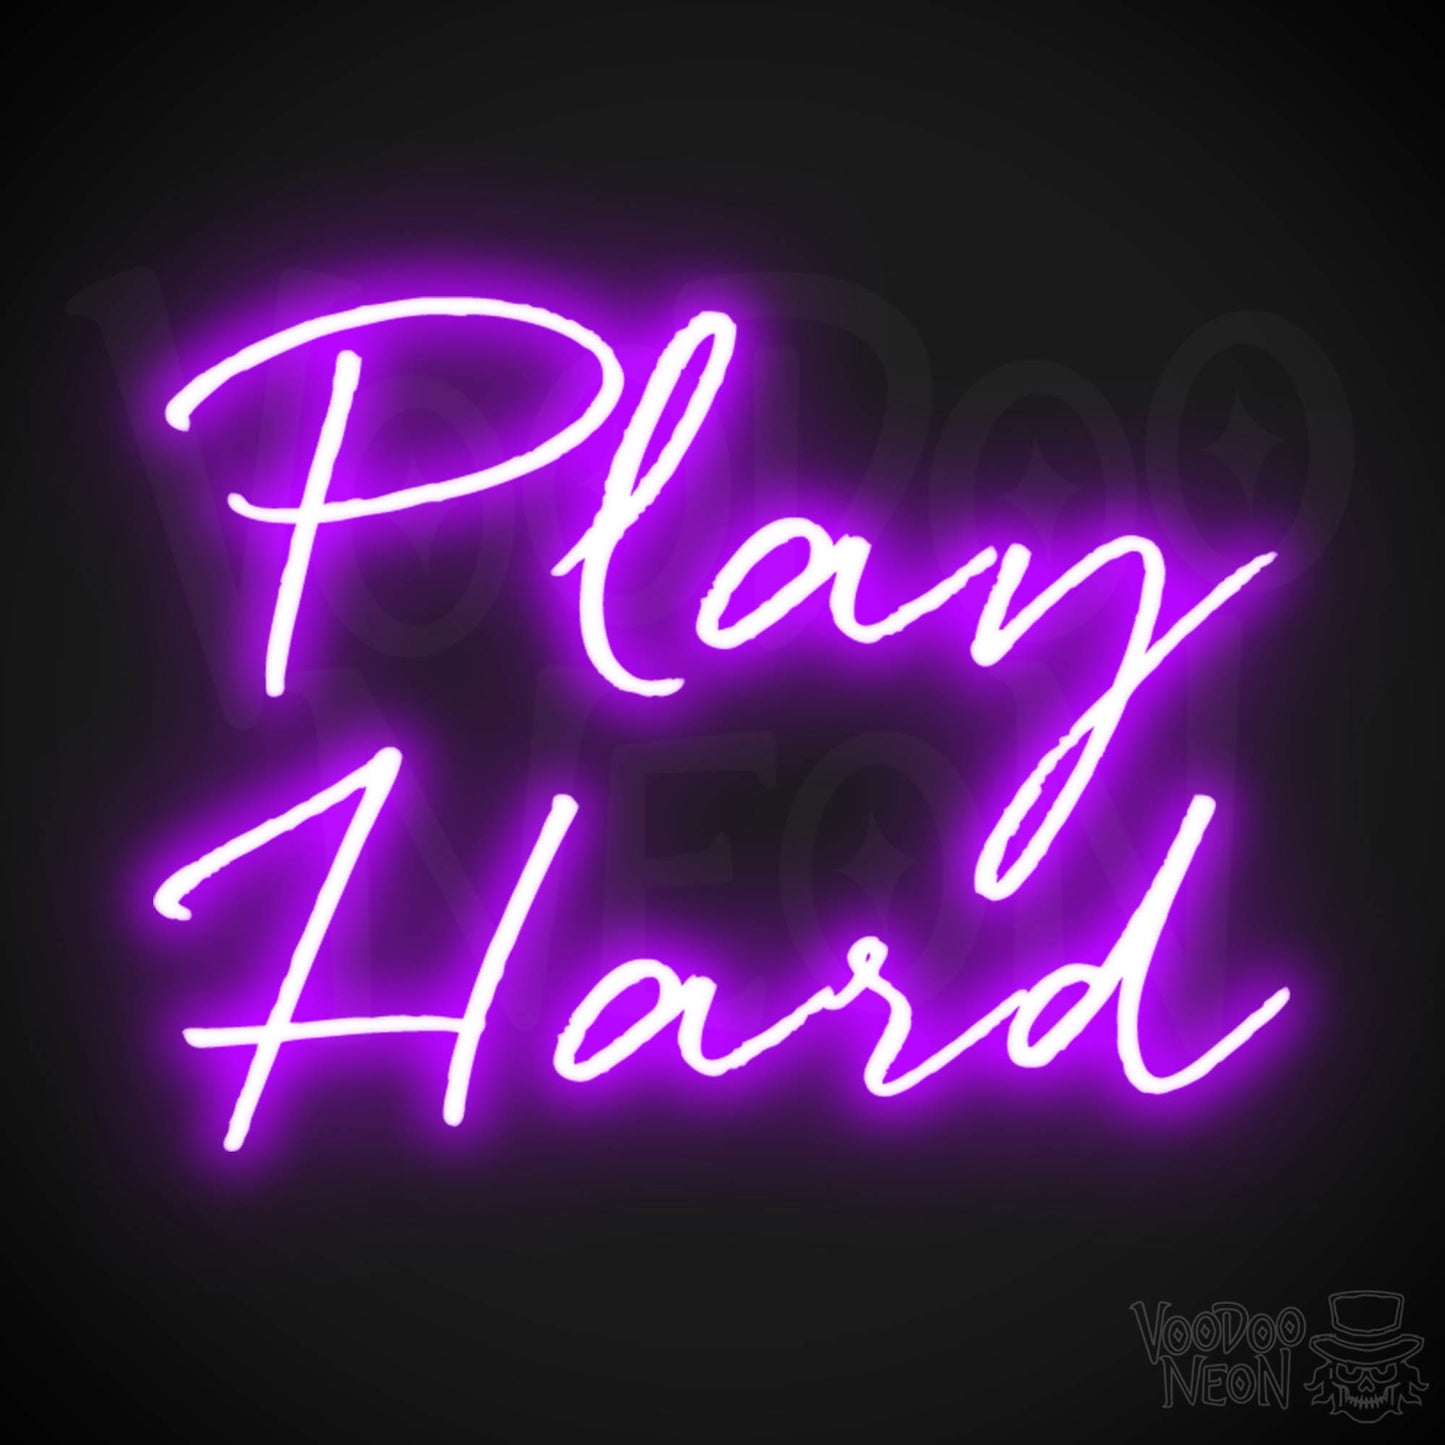 Play Hard Neon Sign - Neon Play Hard Sign - Play Hard LED Sign - Color Purple